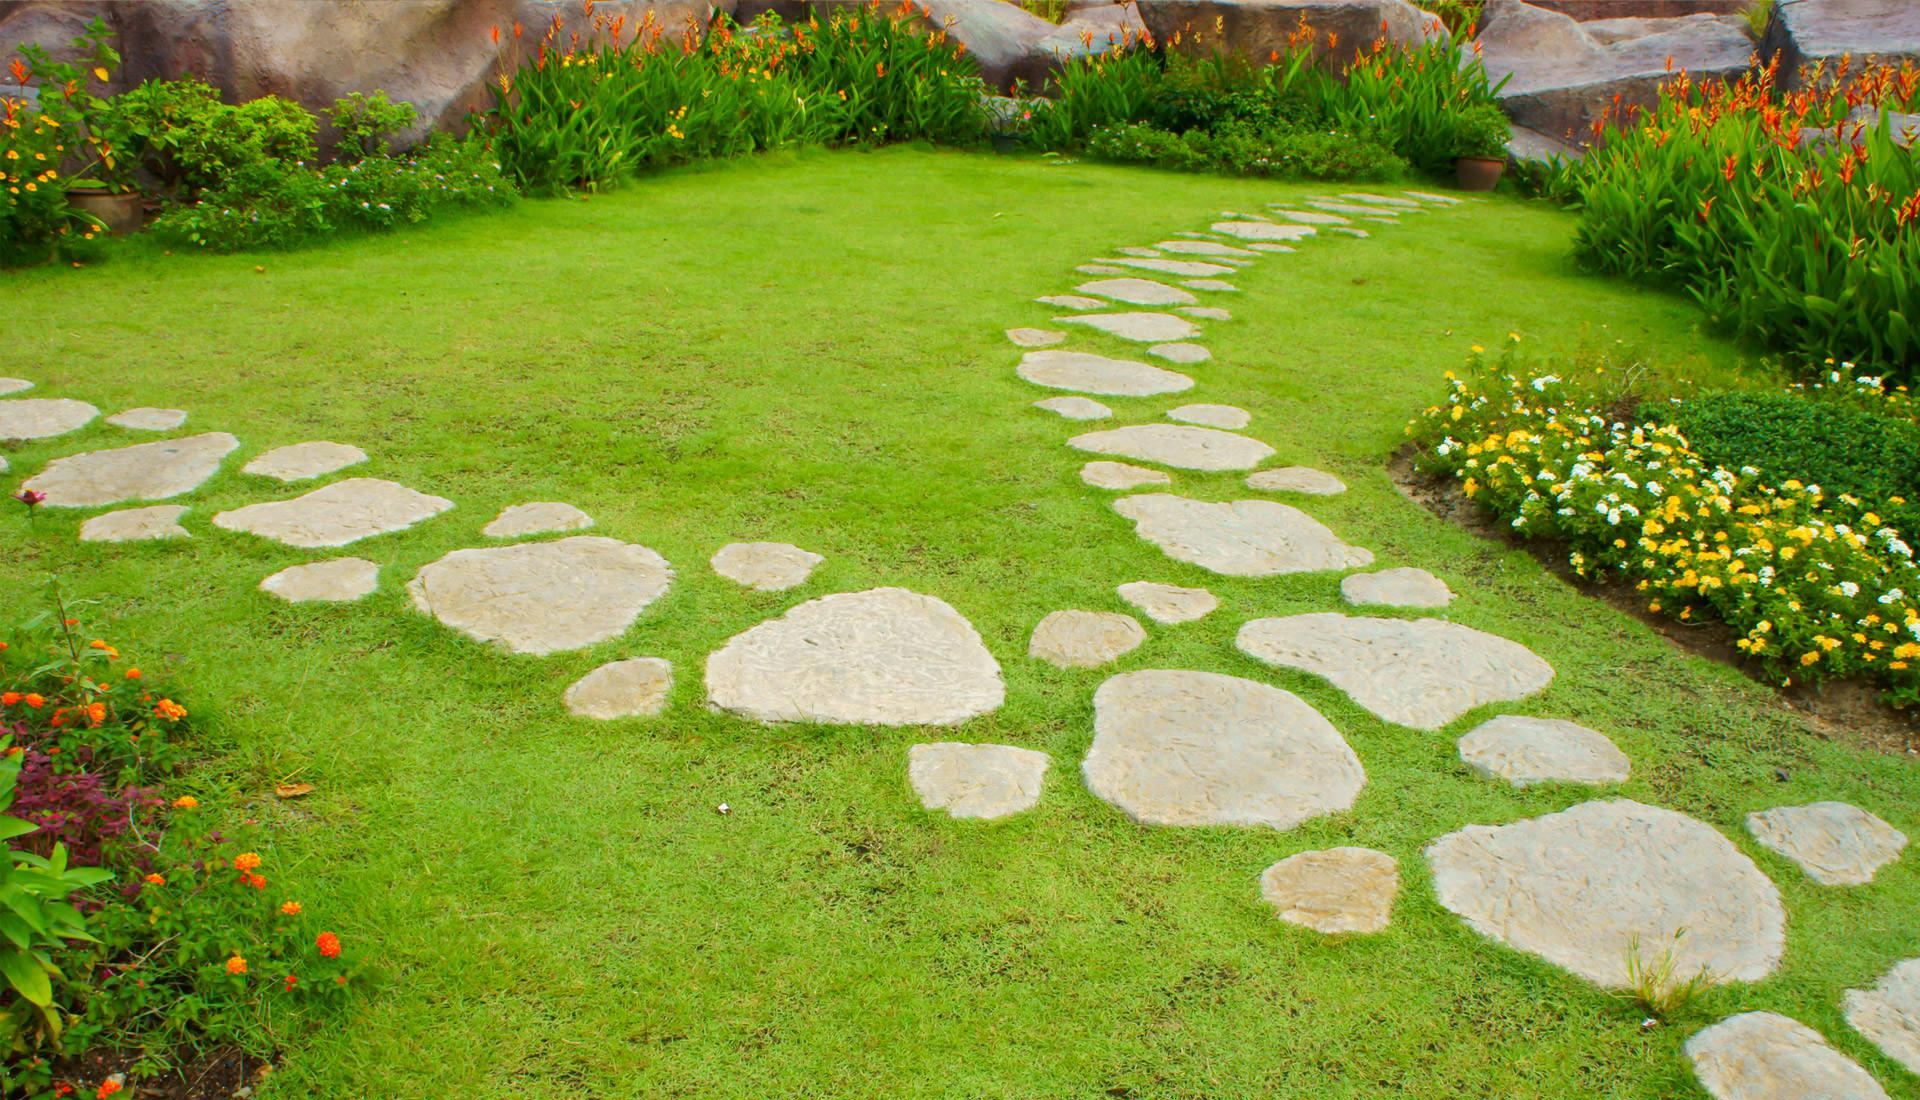 Garden Stepping Stones - Wonderful Garden Stepping Stones Add ...